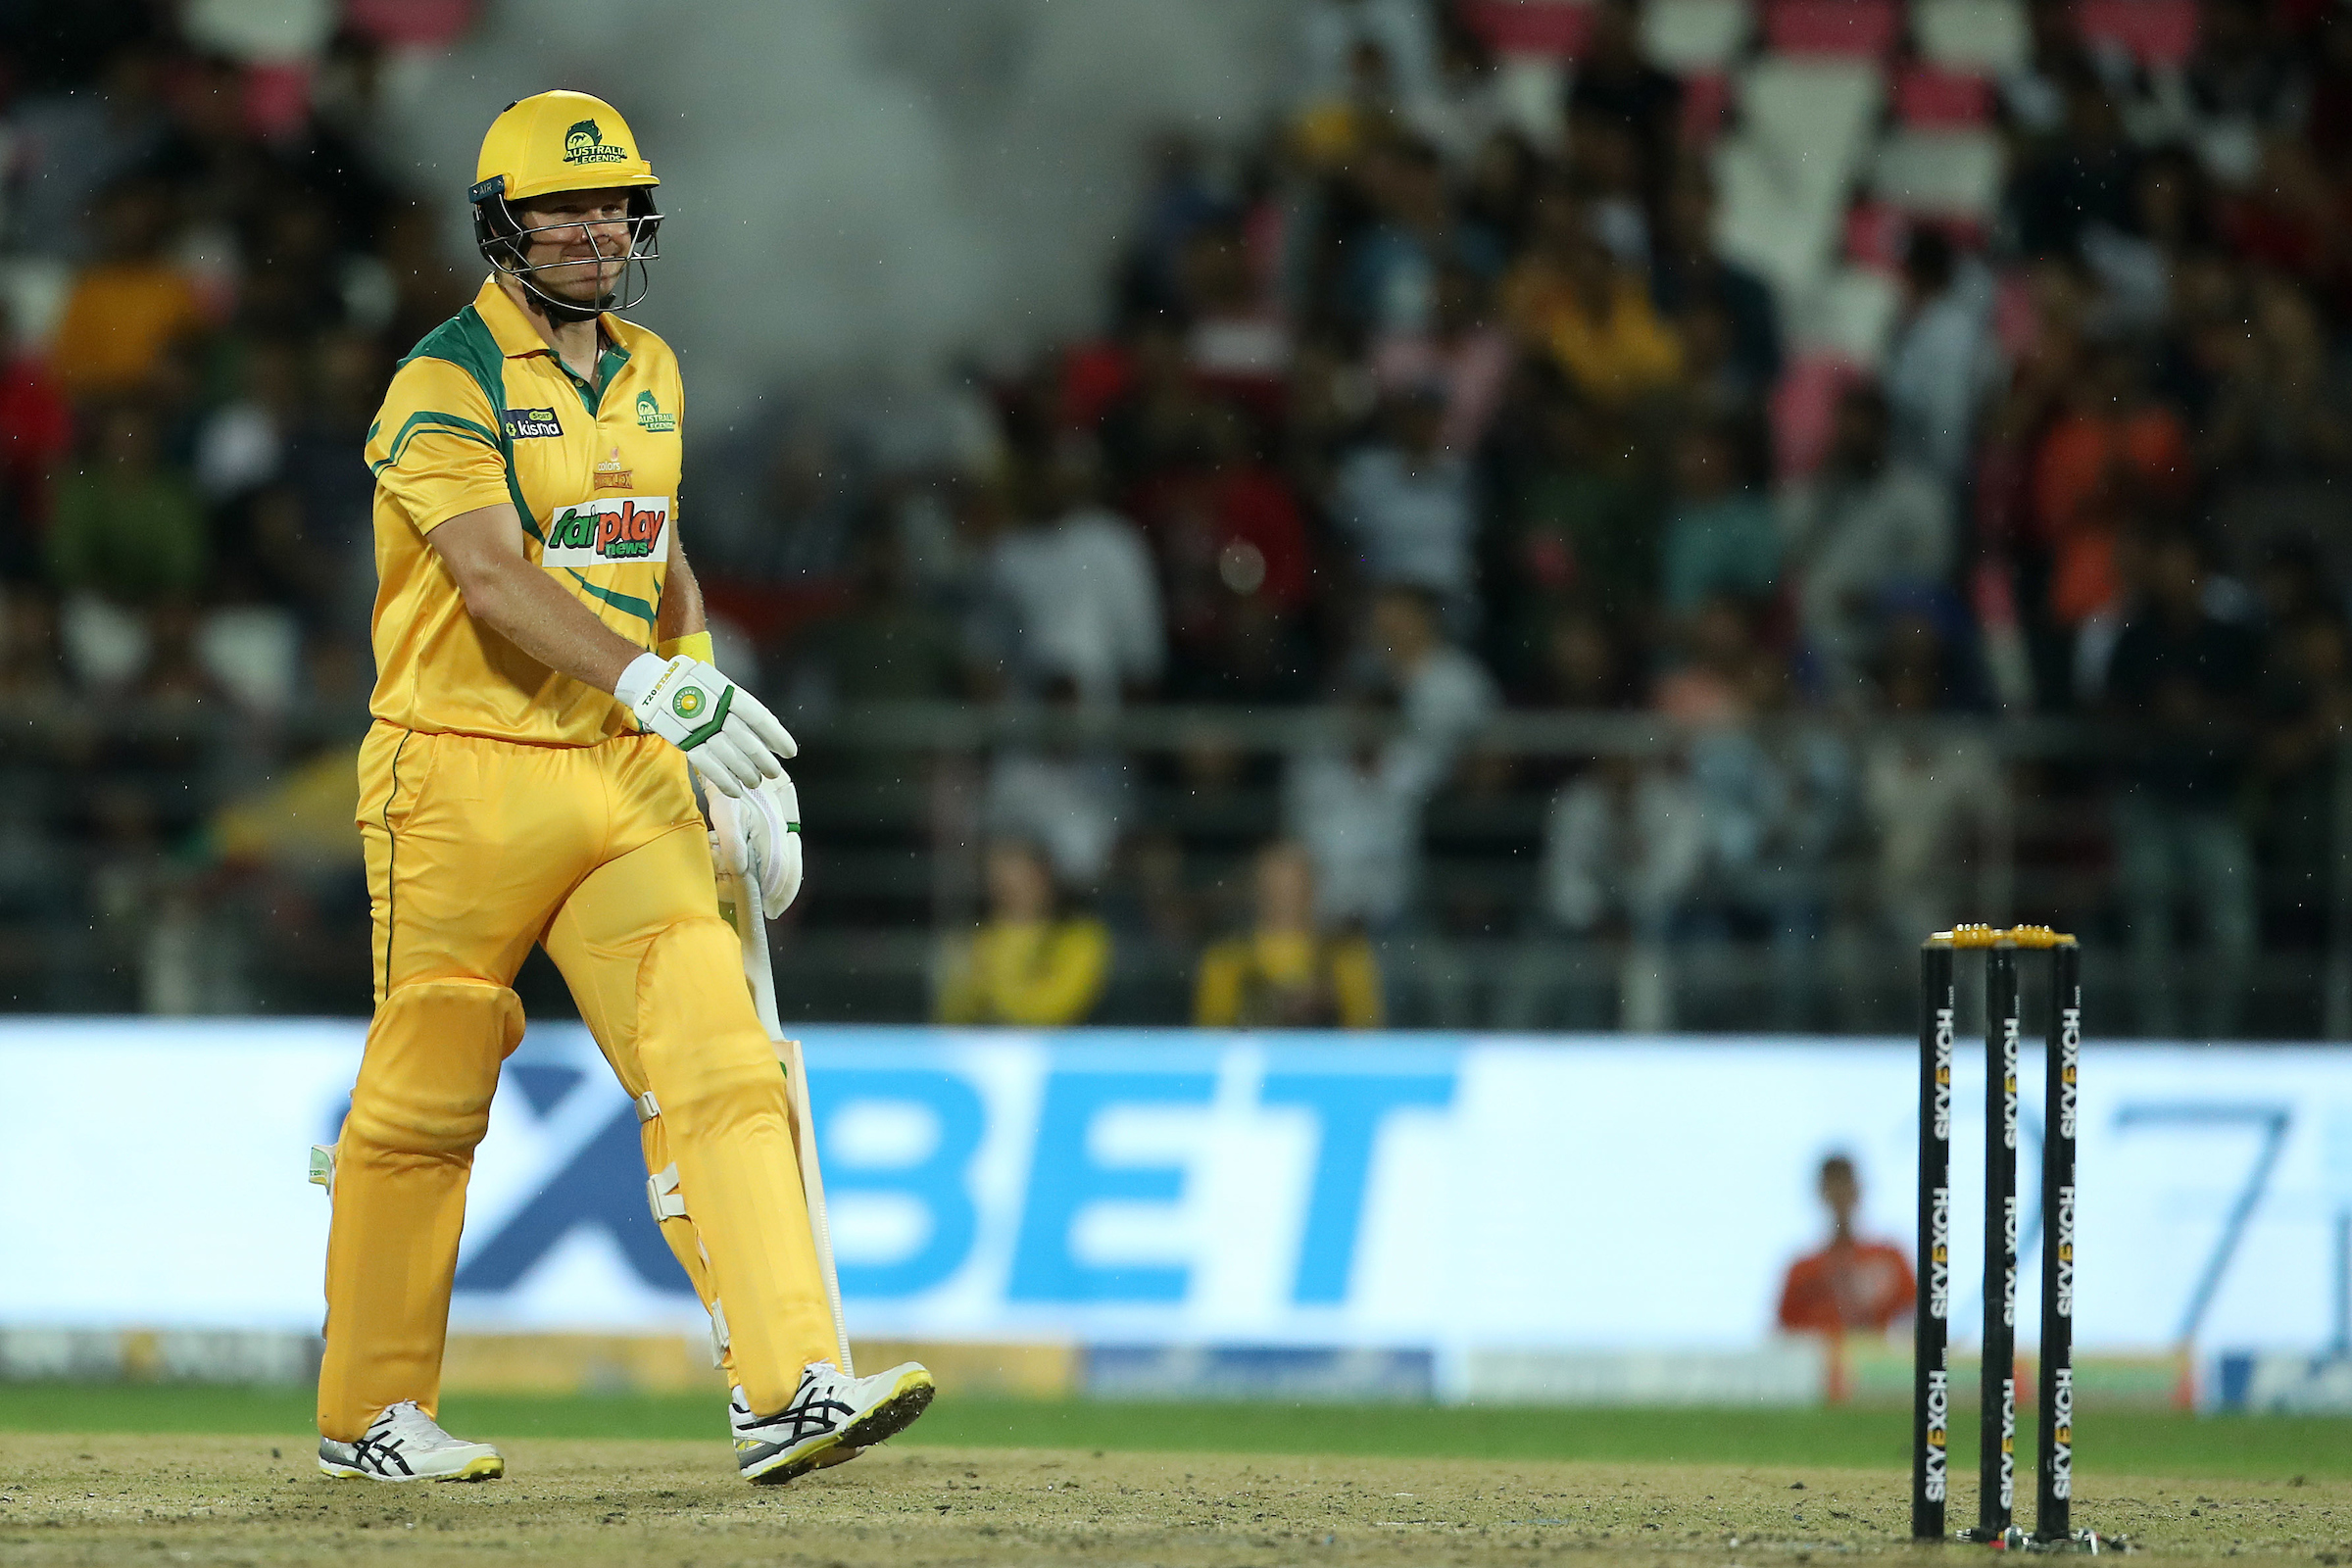 AUS-L vs WI-L: शेन वॉटसन की तूफ़ान में उडी वेस्टइंडीज लेजेंड्स की टीम, ऑस्ट्रेलिया लेजेंड्स ने 8 विकेट से जीता मैच